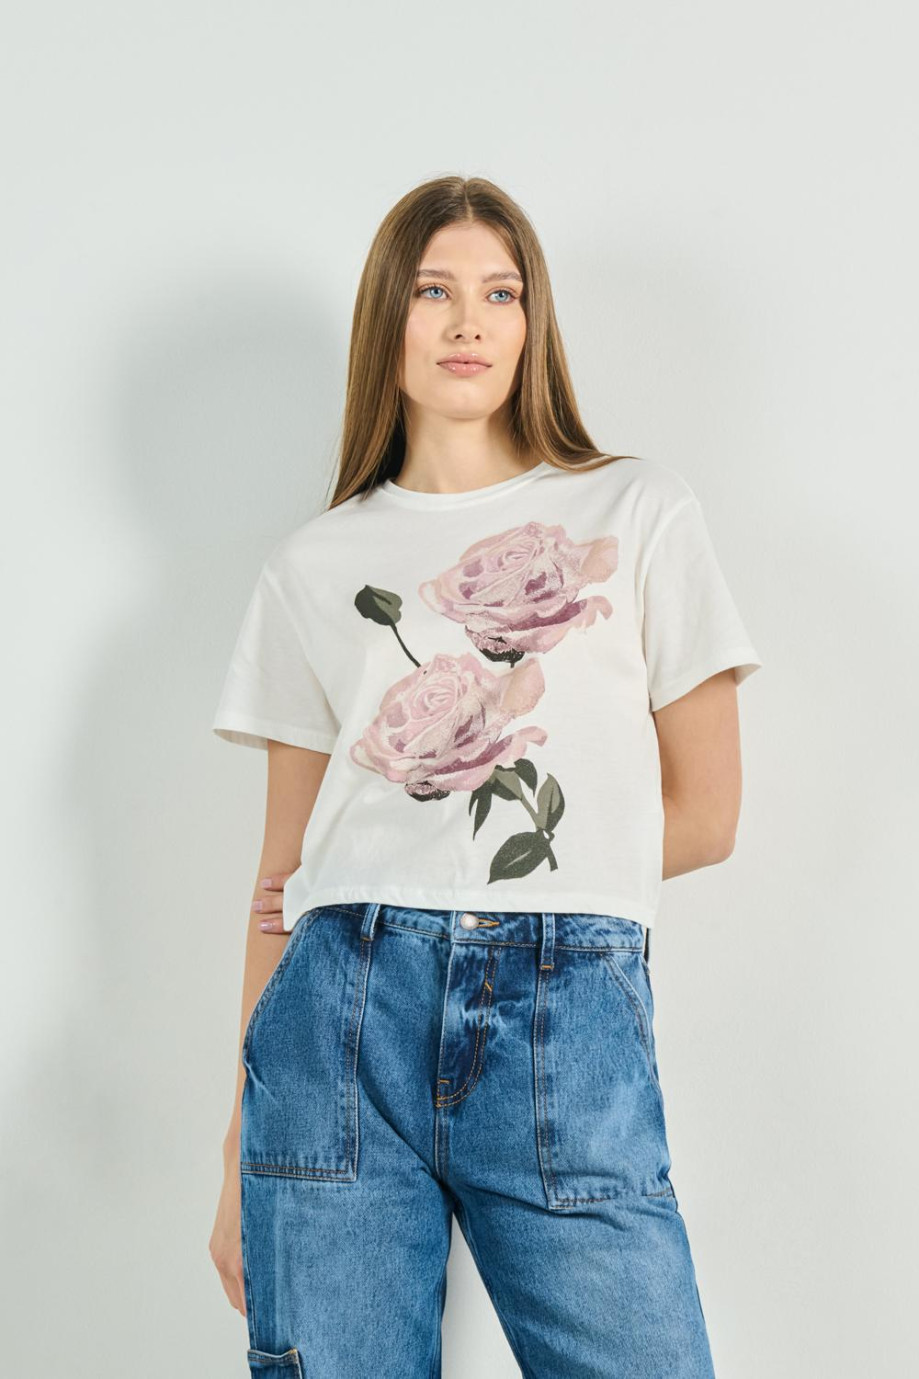 Camiseta unicolor crop top con diseño floral y manga corta